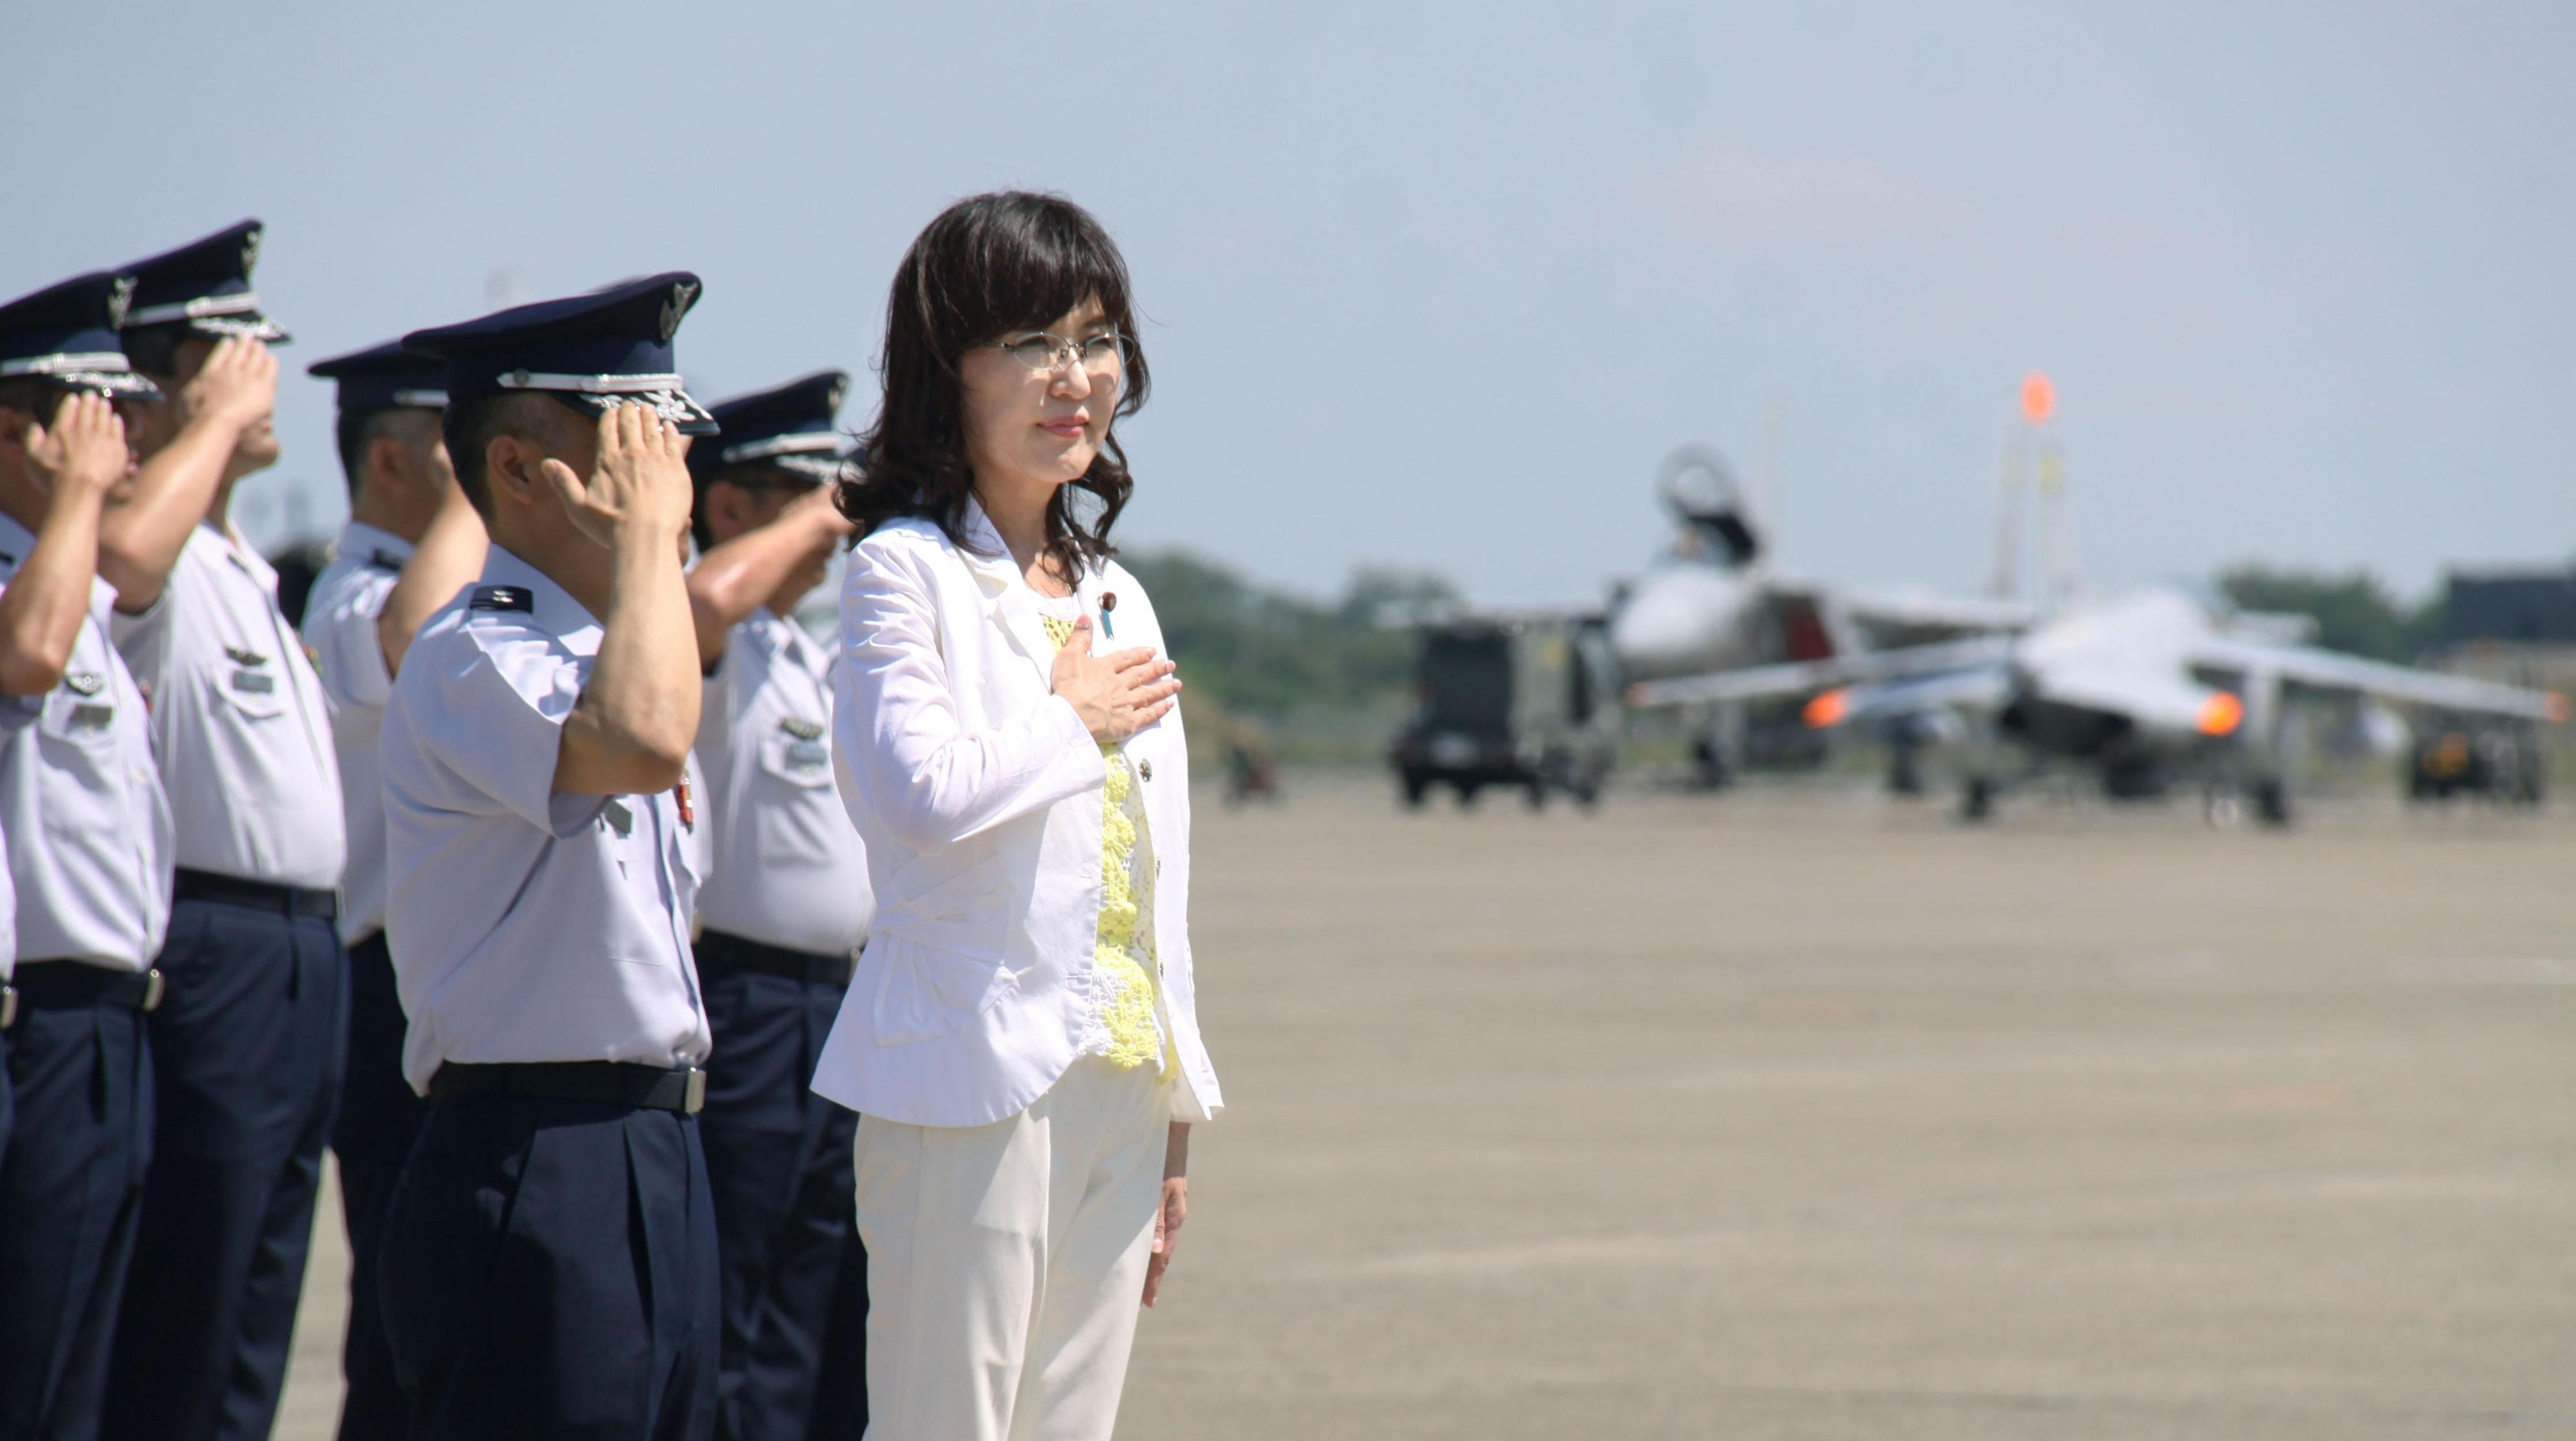 غدًا .. وزيرة الدفاع اليابان تجري مباحثات مع نظيرها الأمريكي الجديد